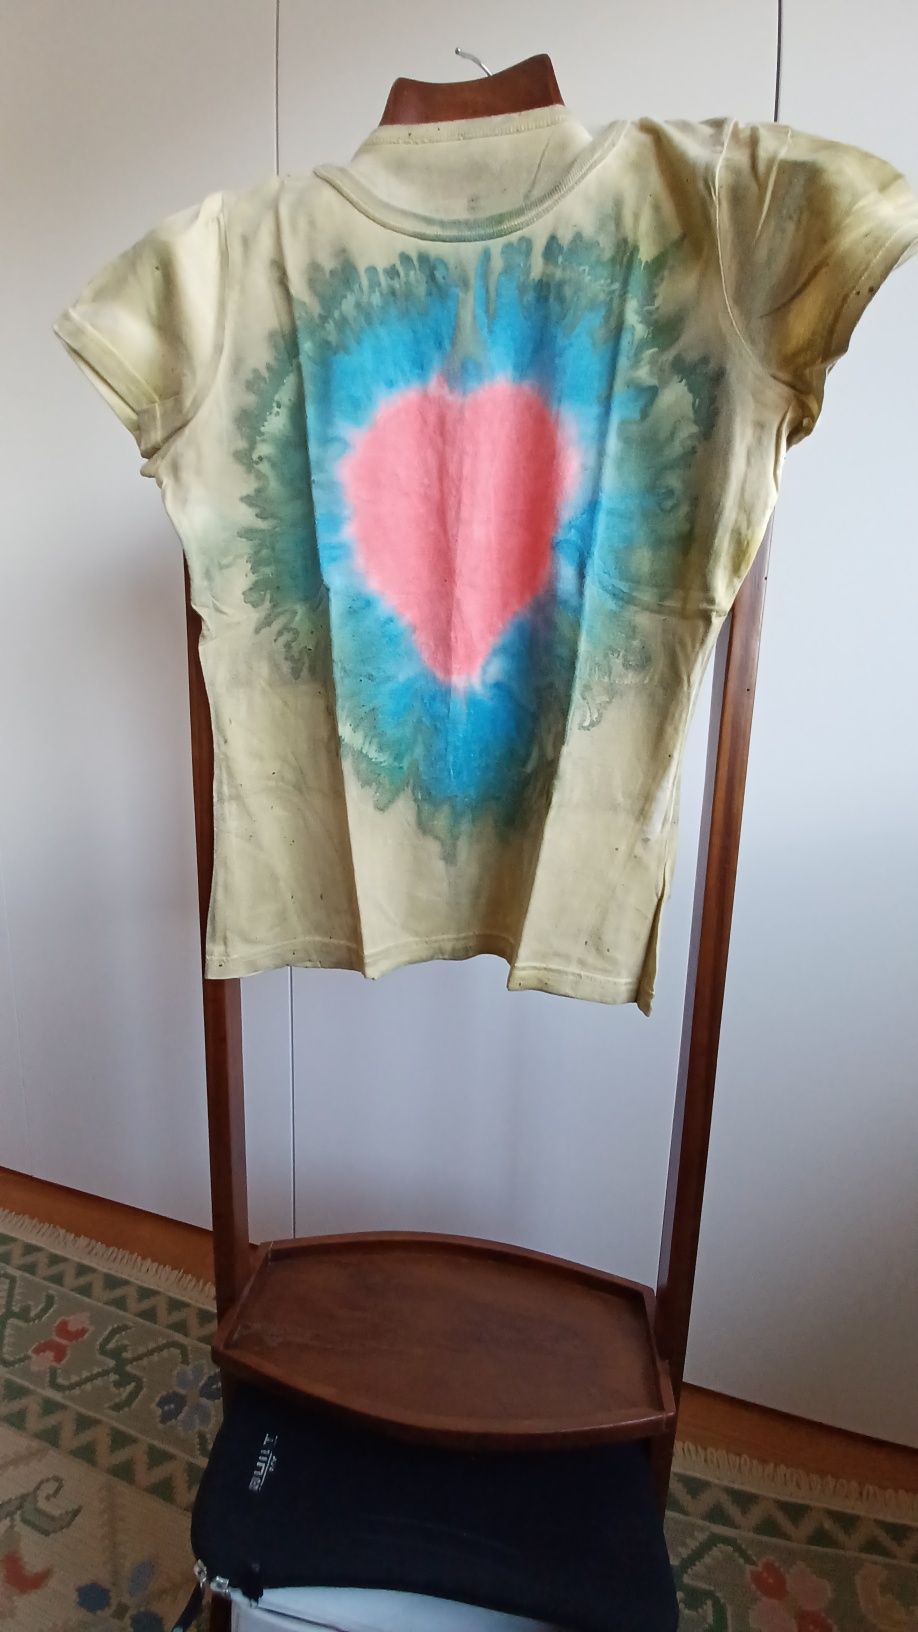 T-shirt Tye Dye desenho em coração